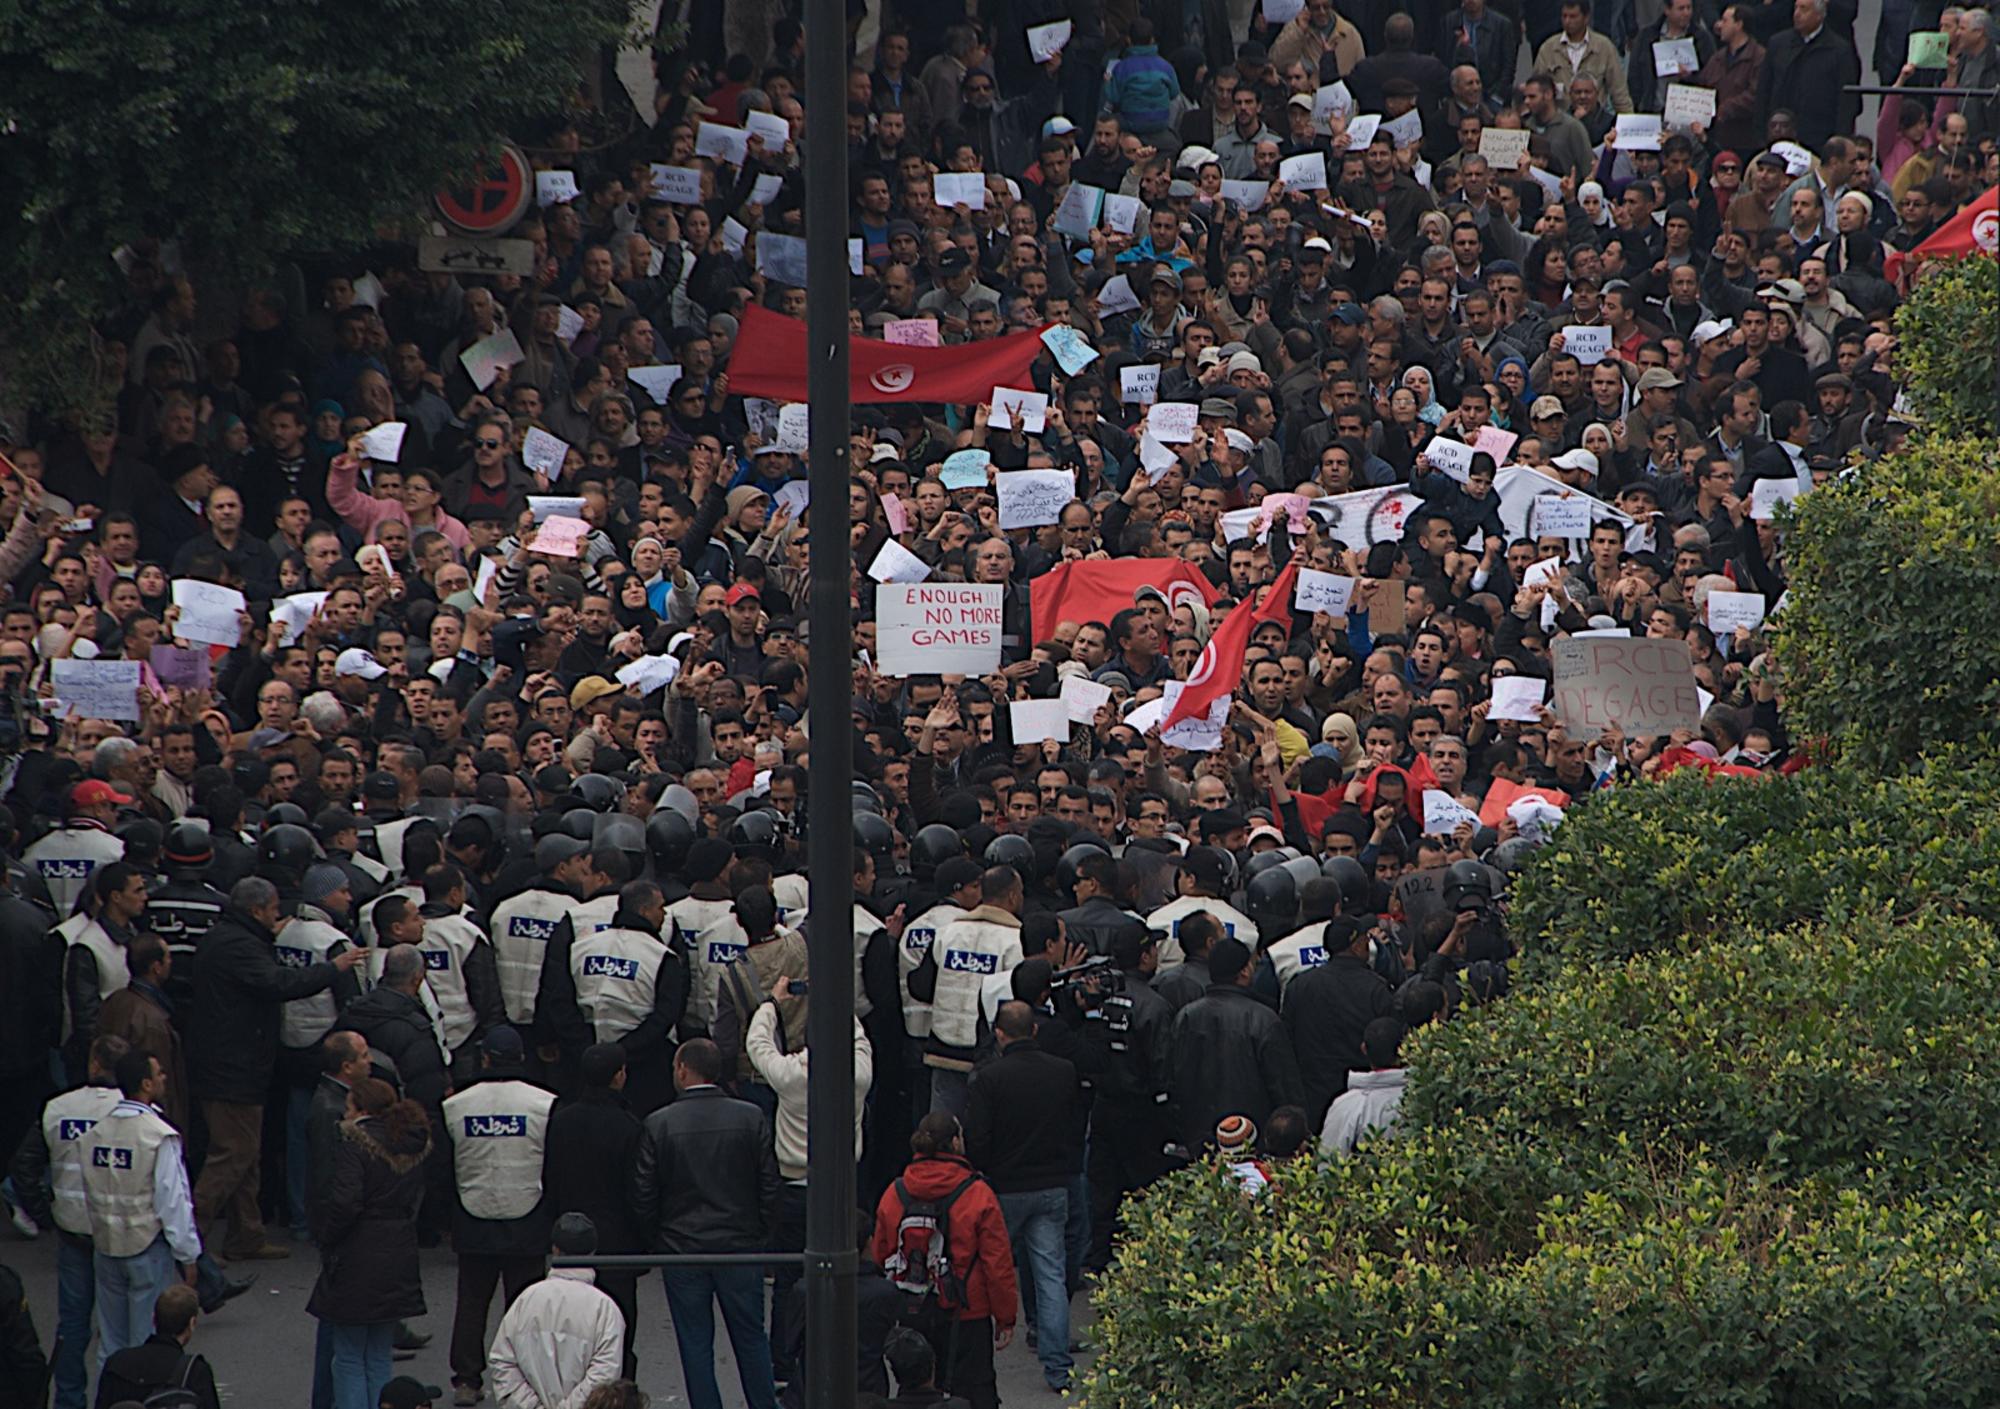 Túnez manifestación